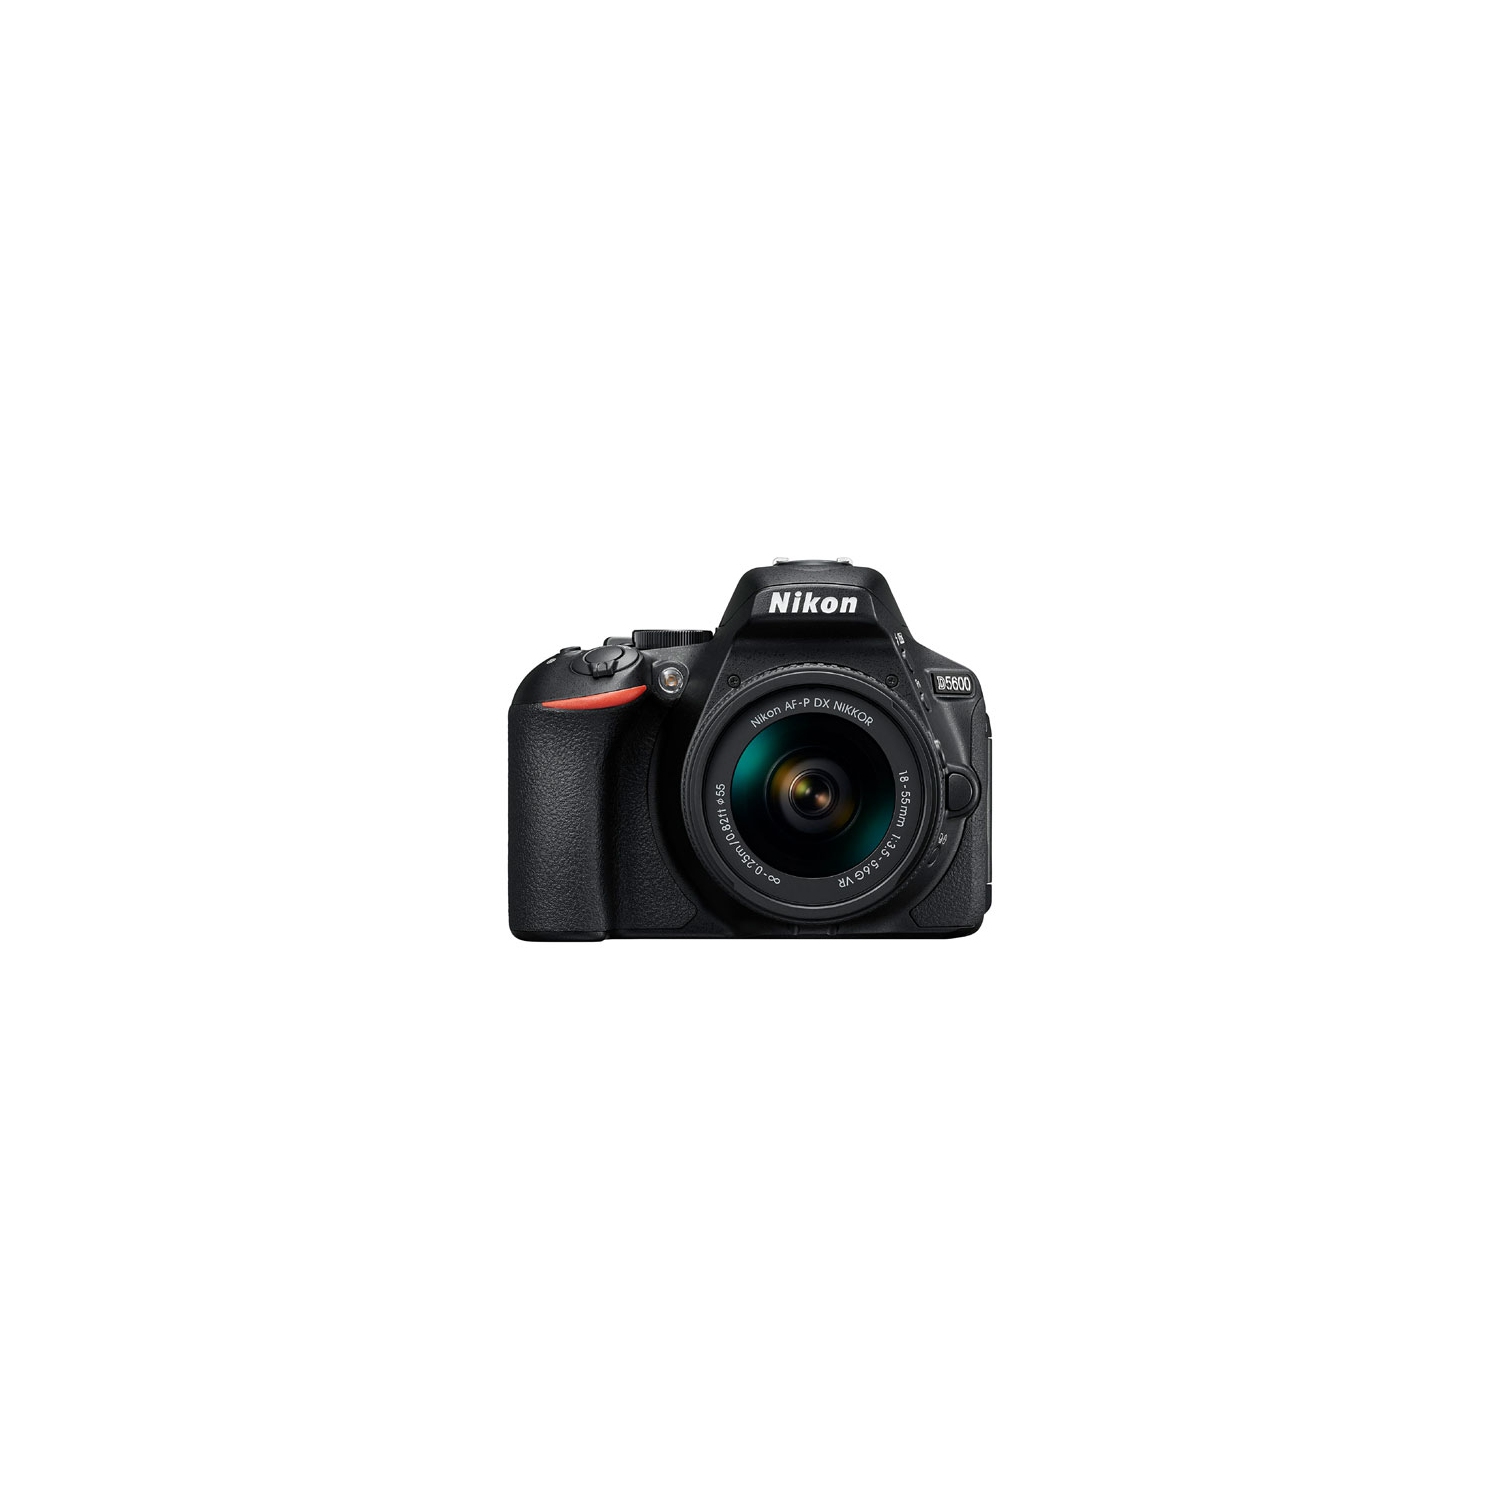 Refurbished (Good) - Nikon D5600 DSLR Camera with AF-P DX NIKKOR 18-55mm f/3.5-5.6G VR Lens Kit